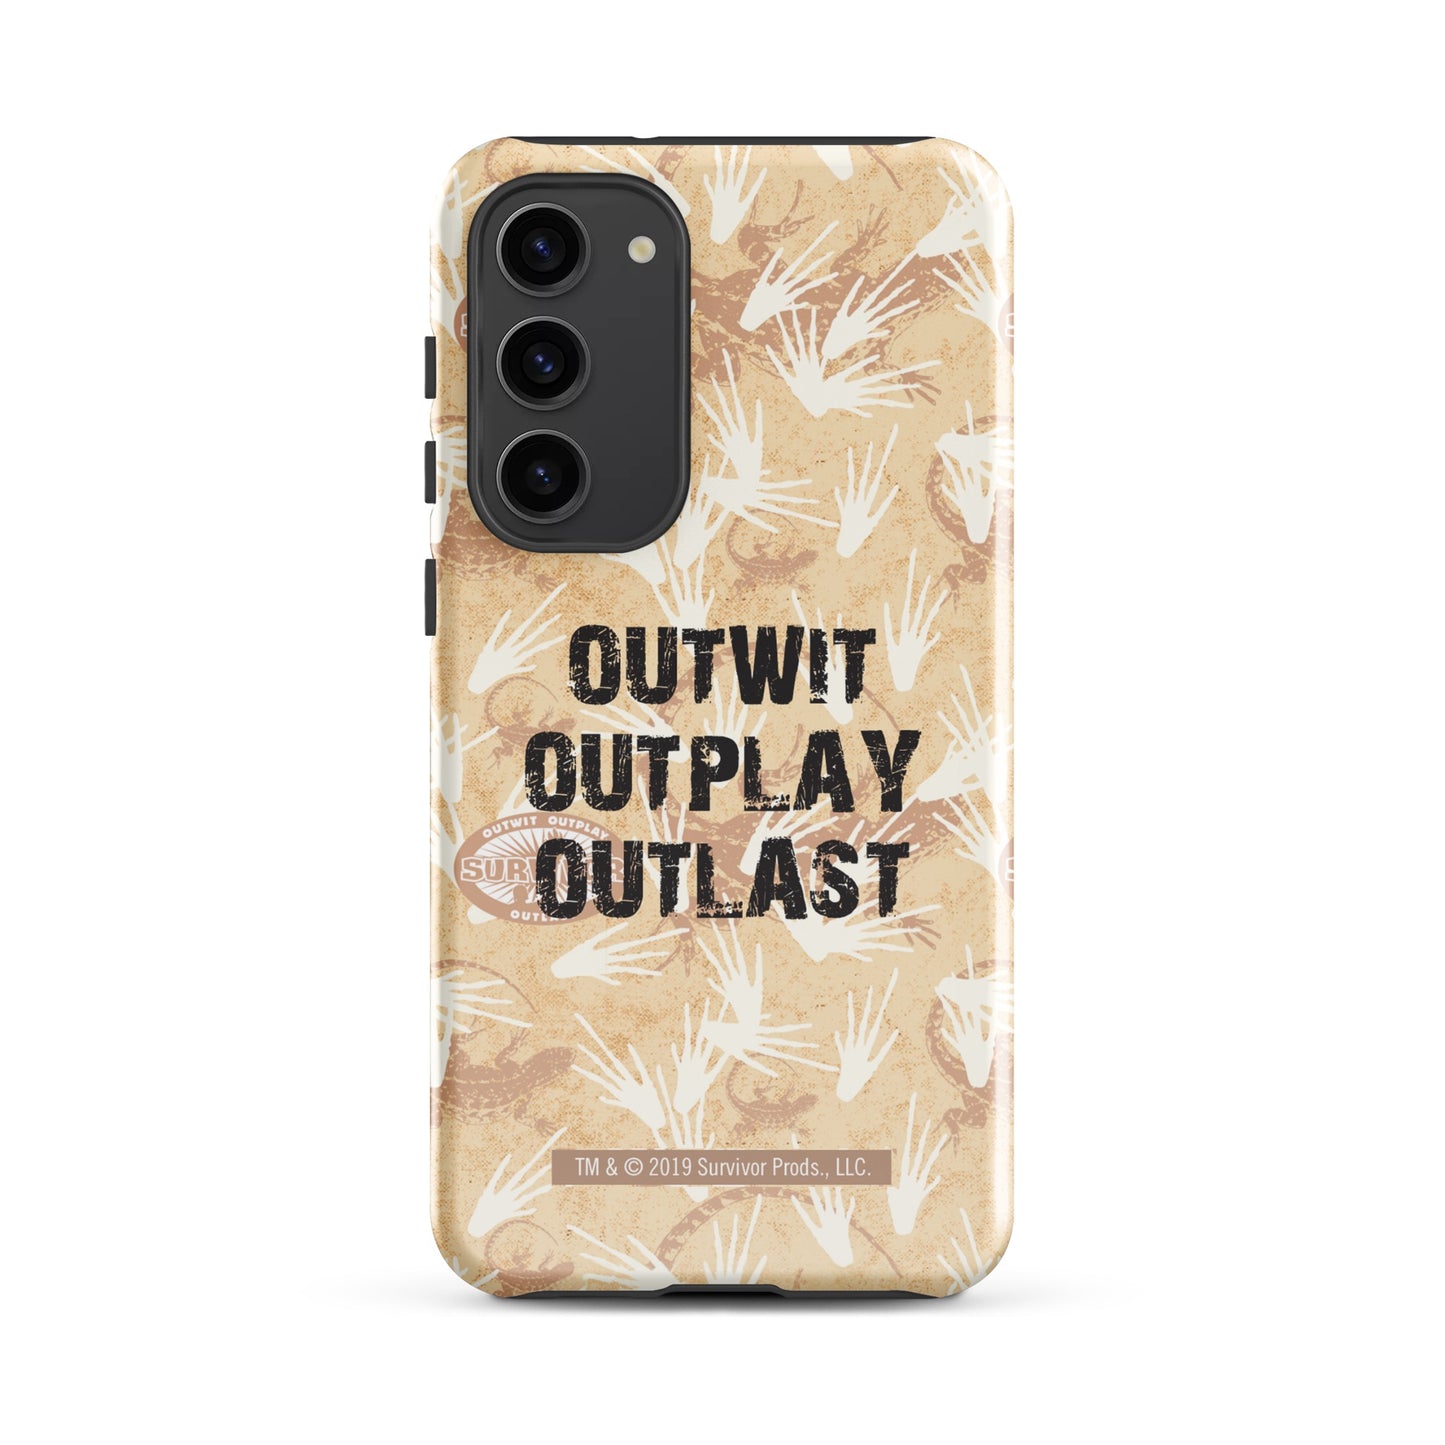 Survivor Funda resistente para teléfono Outwit, Outplay, Outlast - Samsung